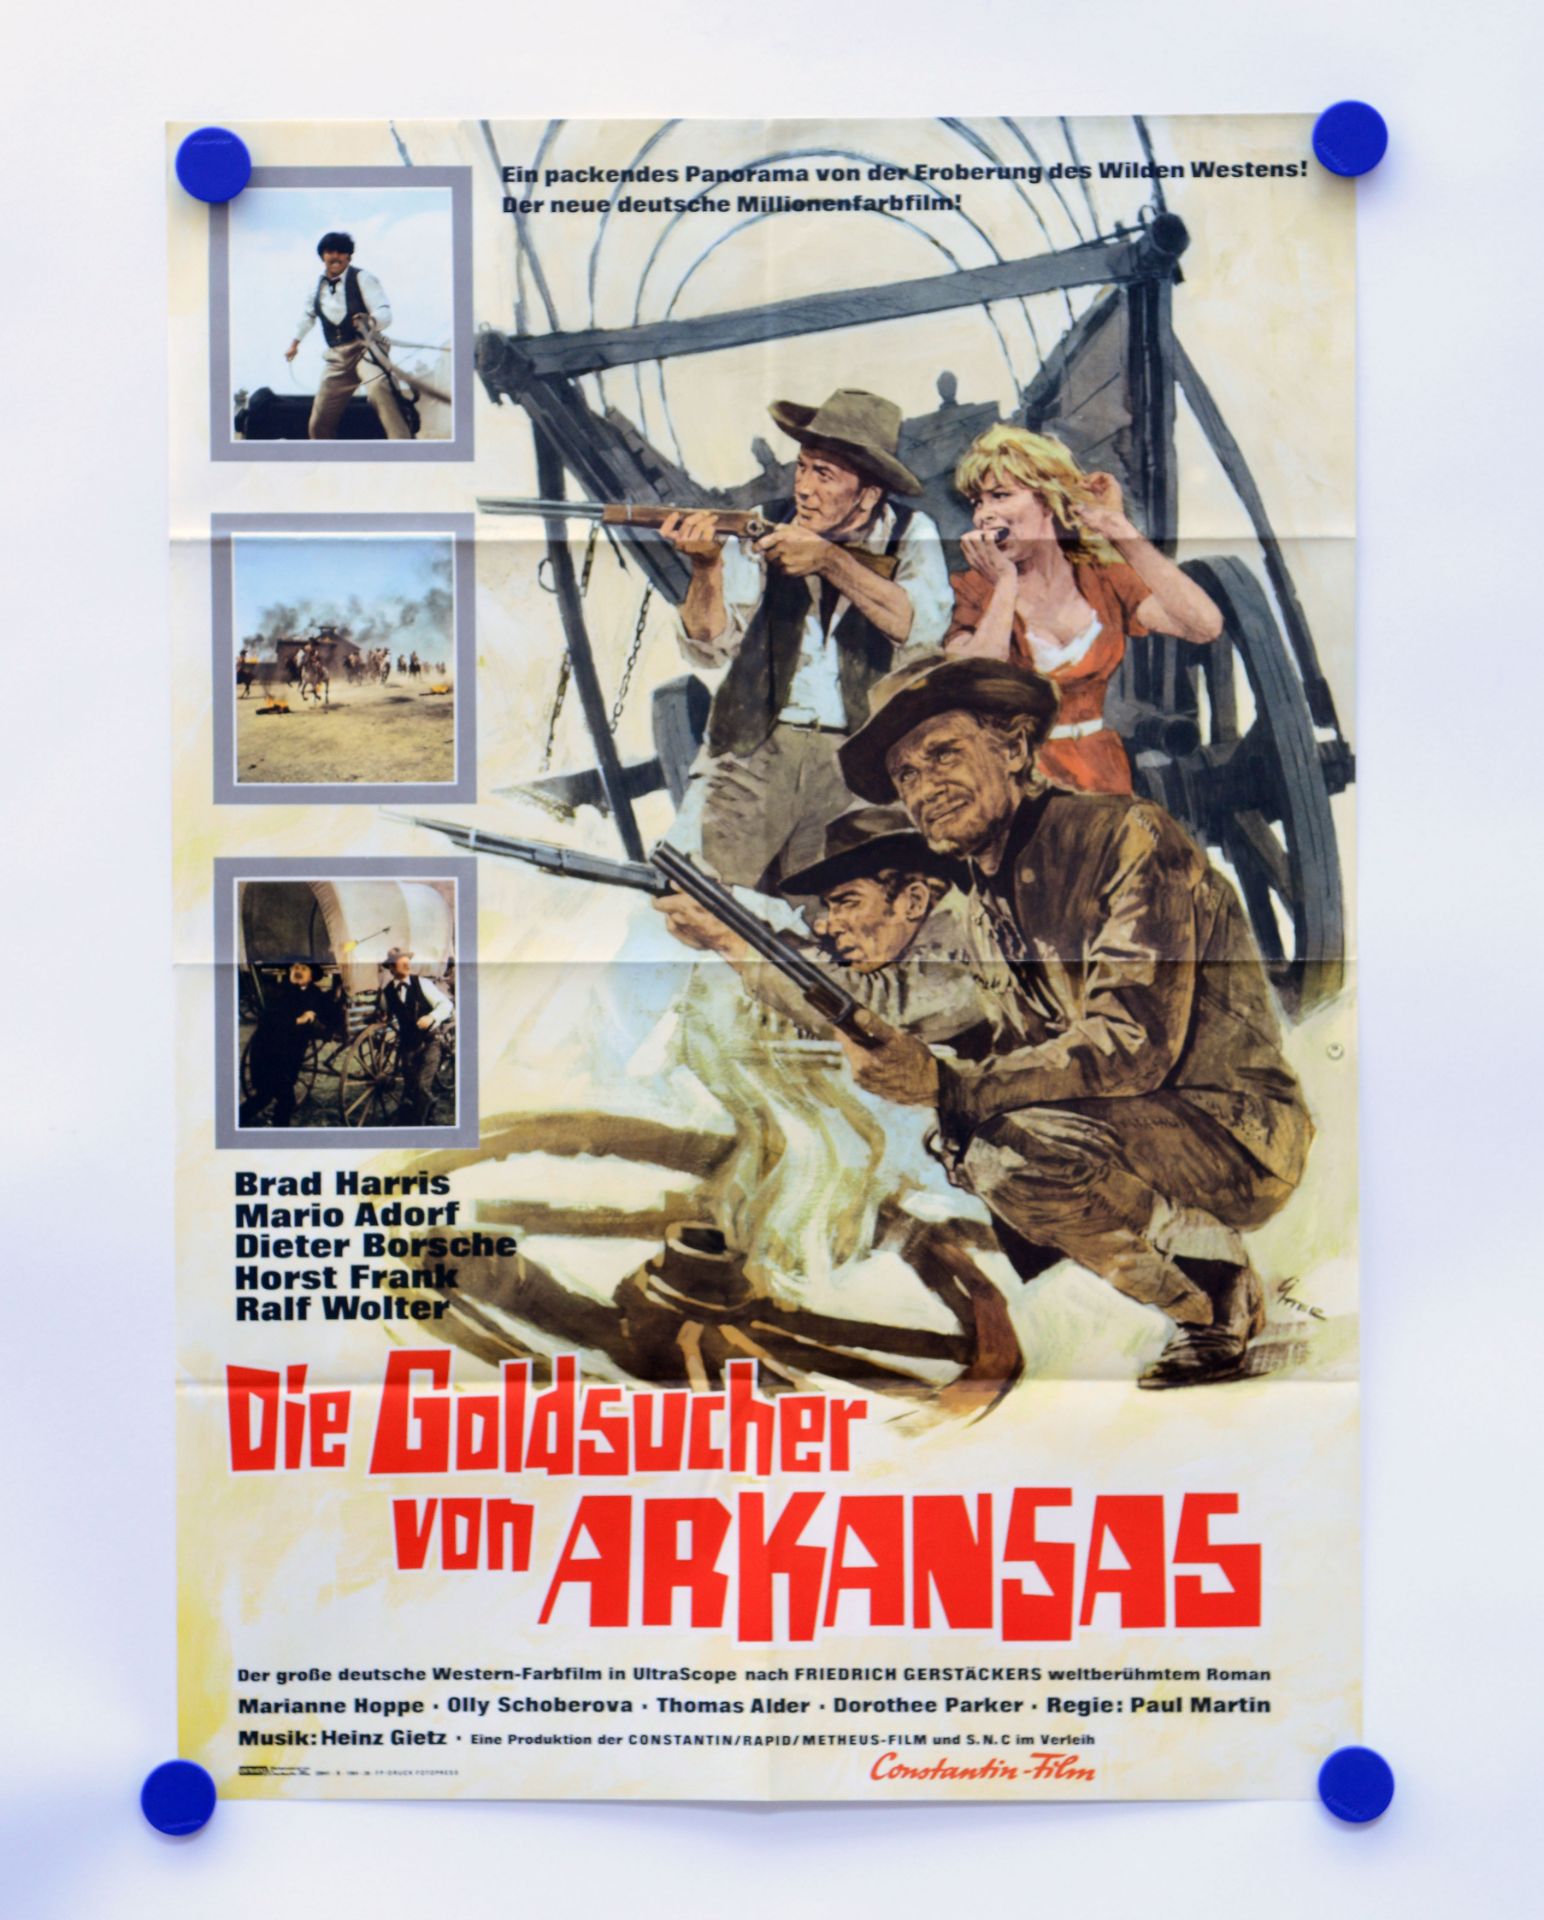 Film poster "Die Goldsucher von Arkansas", 58x82 cm, folded